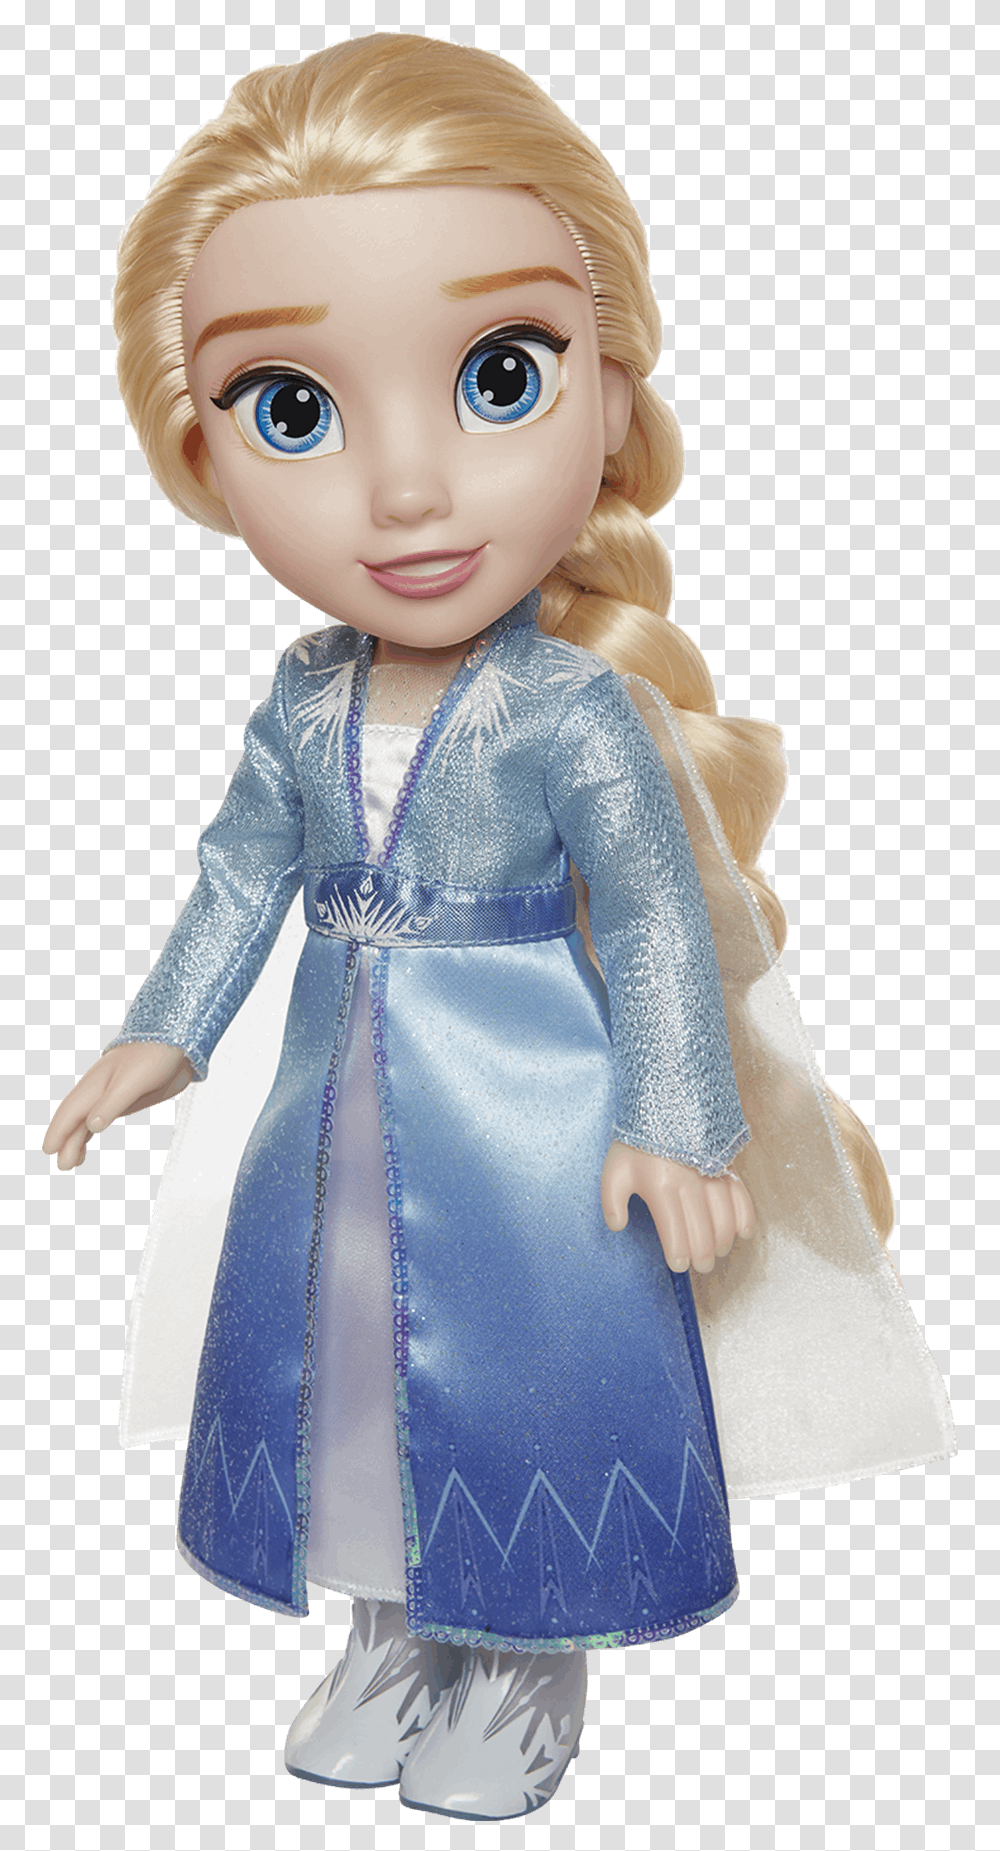 Frozen 2 Elsa Vestido De Viaje Frozen Elsa Doll Abito, Toy, Barbie, Figurine, Person Transparent Png